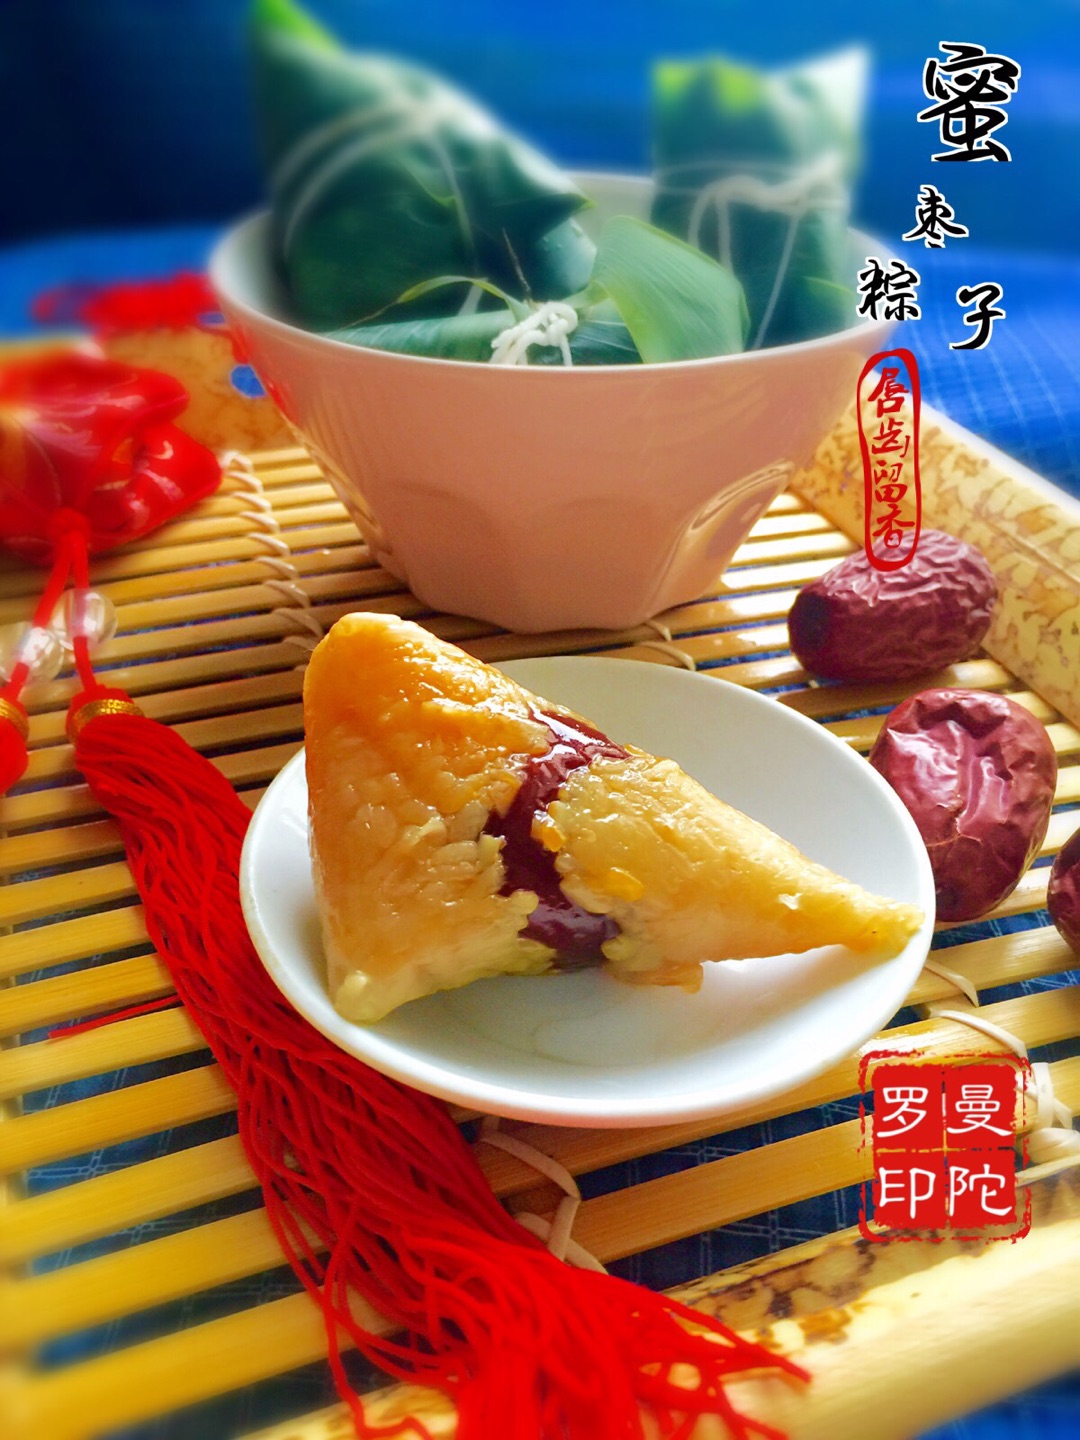 红枣粽子,红枣粽子的家常做法 - 美食杰红枣粽子做法大全